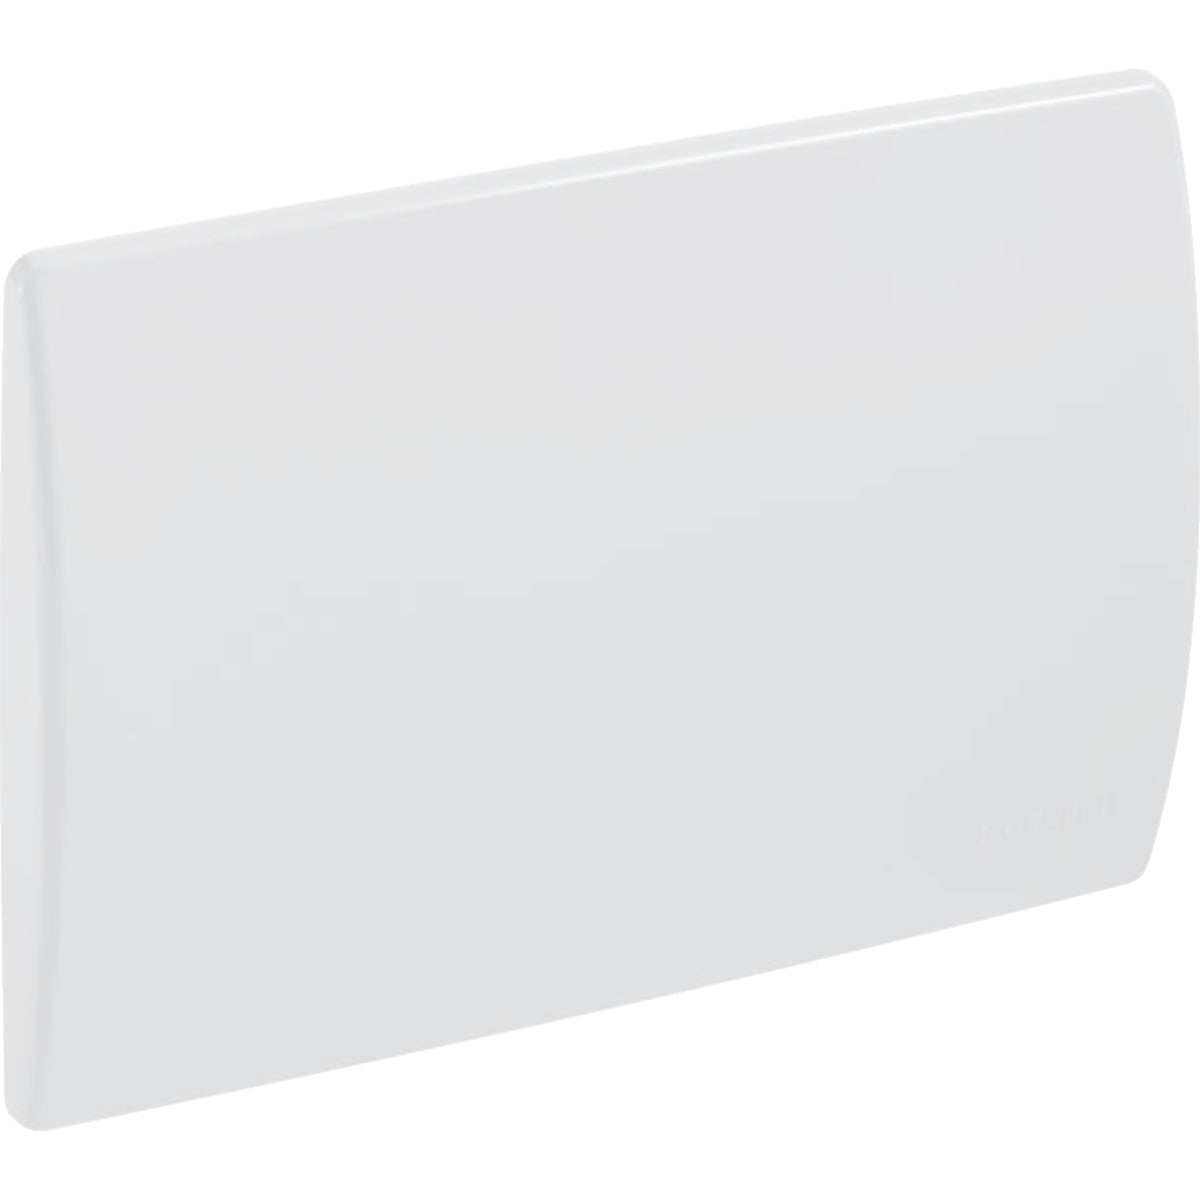 alpine white cover plate